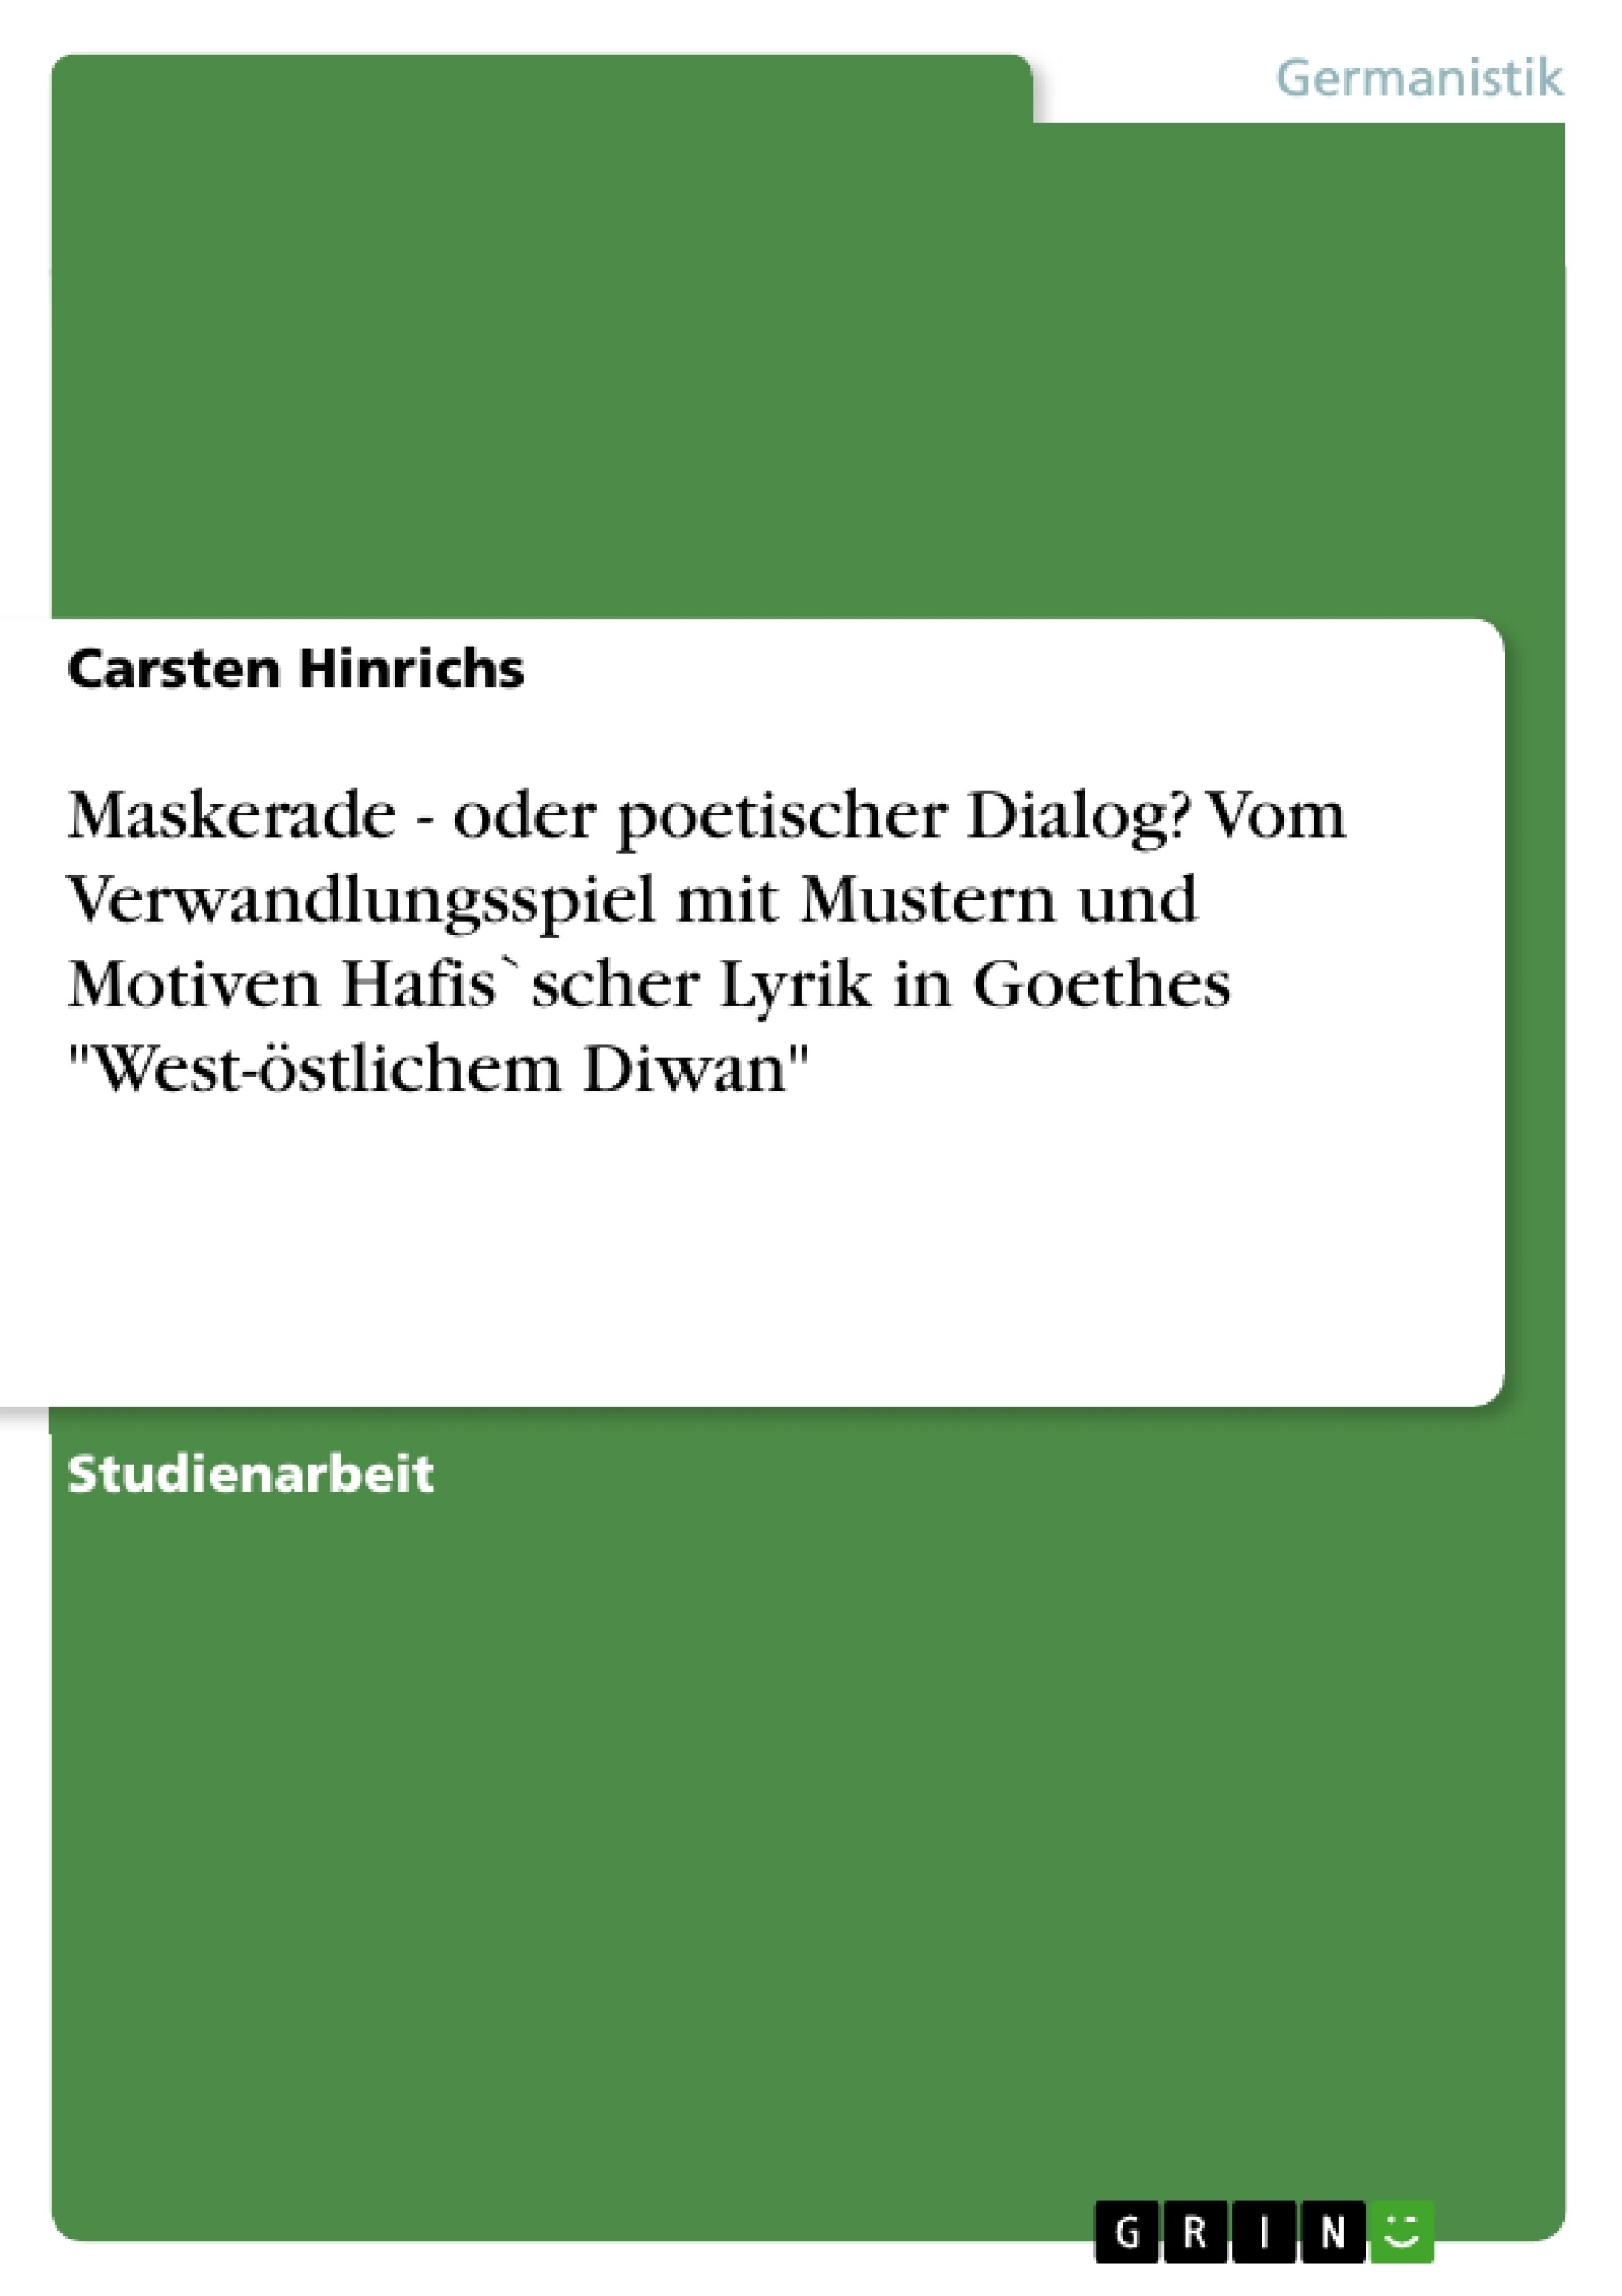 Title: Maskerade - oder poetischer Dialog? Vom Verwandlungsspiel mit Mustern und Motiven Hafis`scher Lyrik in Goethes "West-östlichem Diwan"